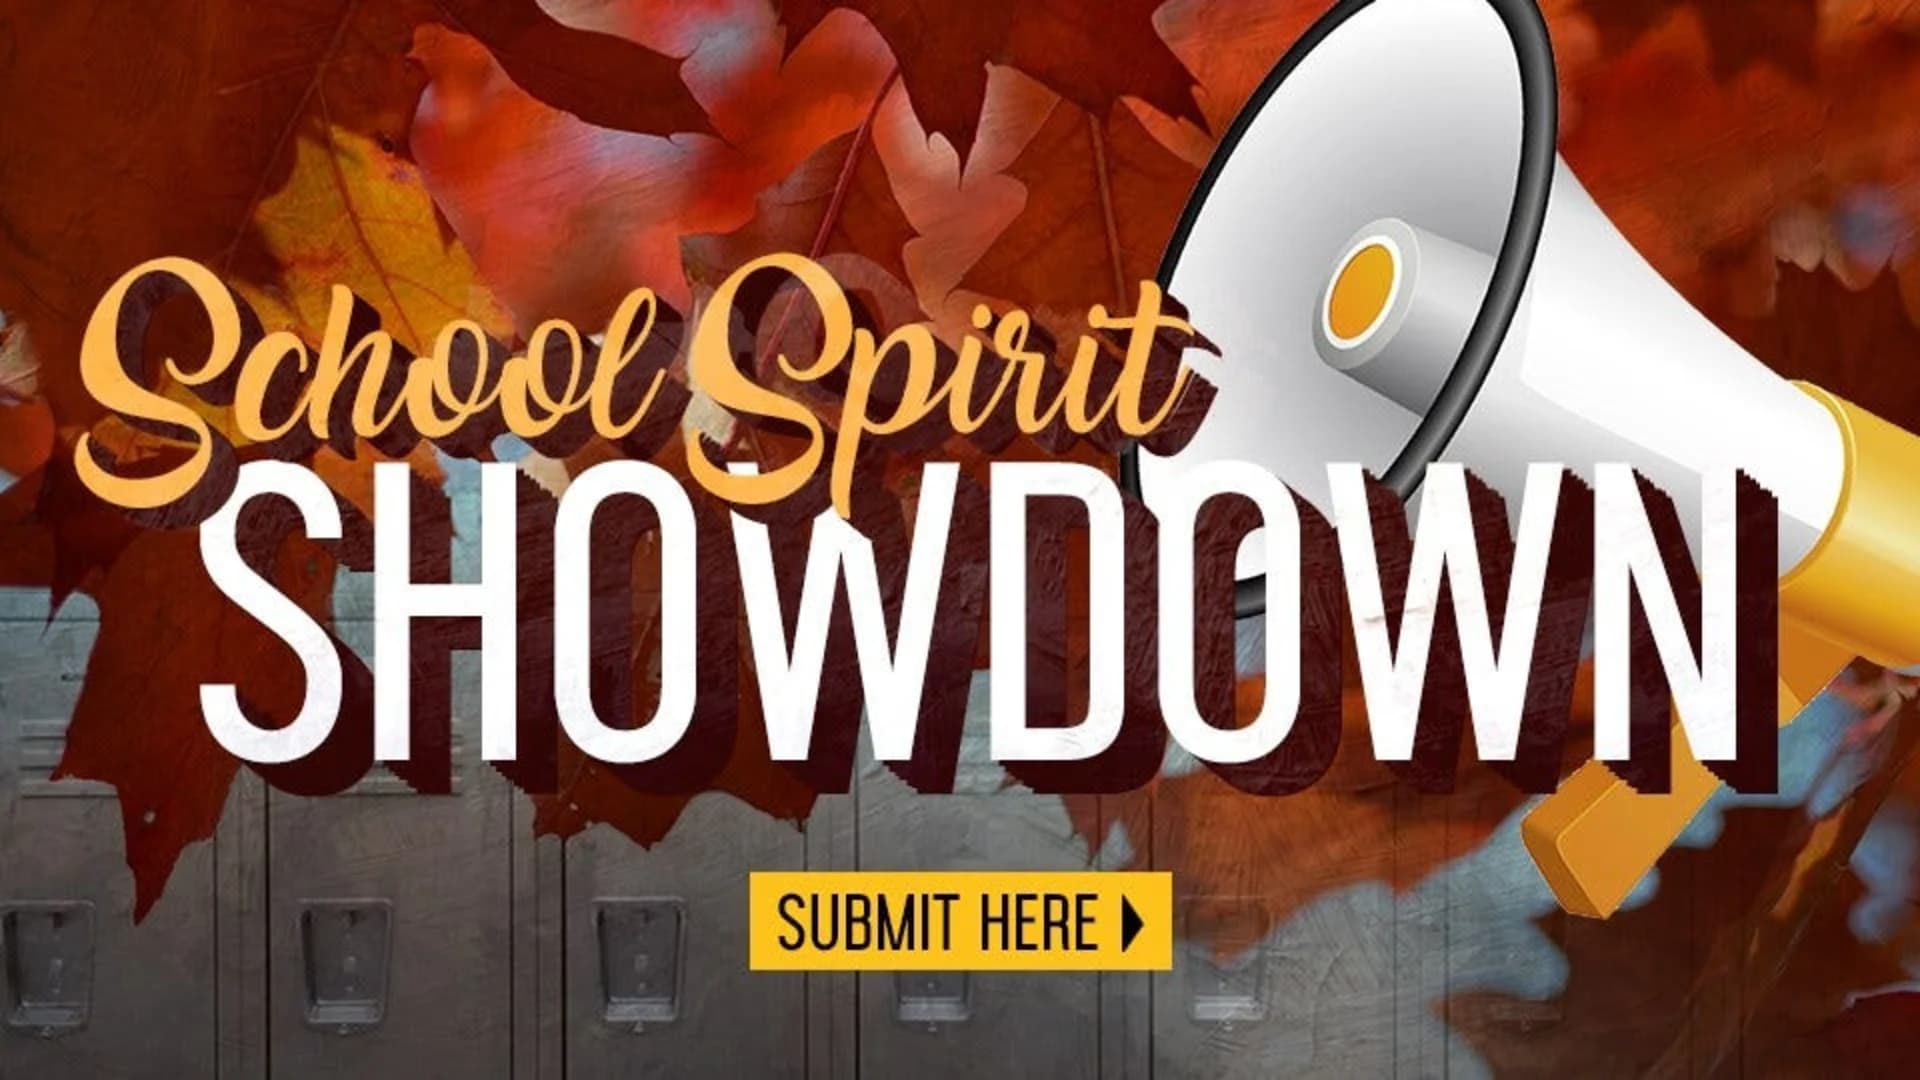 School Spirit Showdown ends in the Hudson Valley